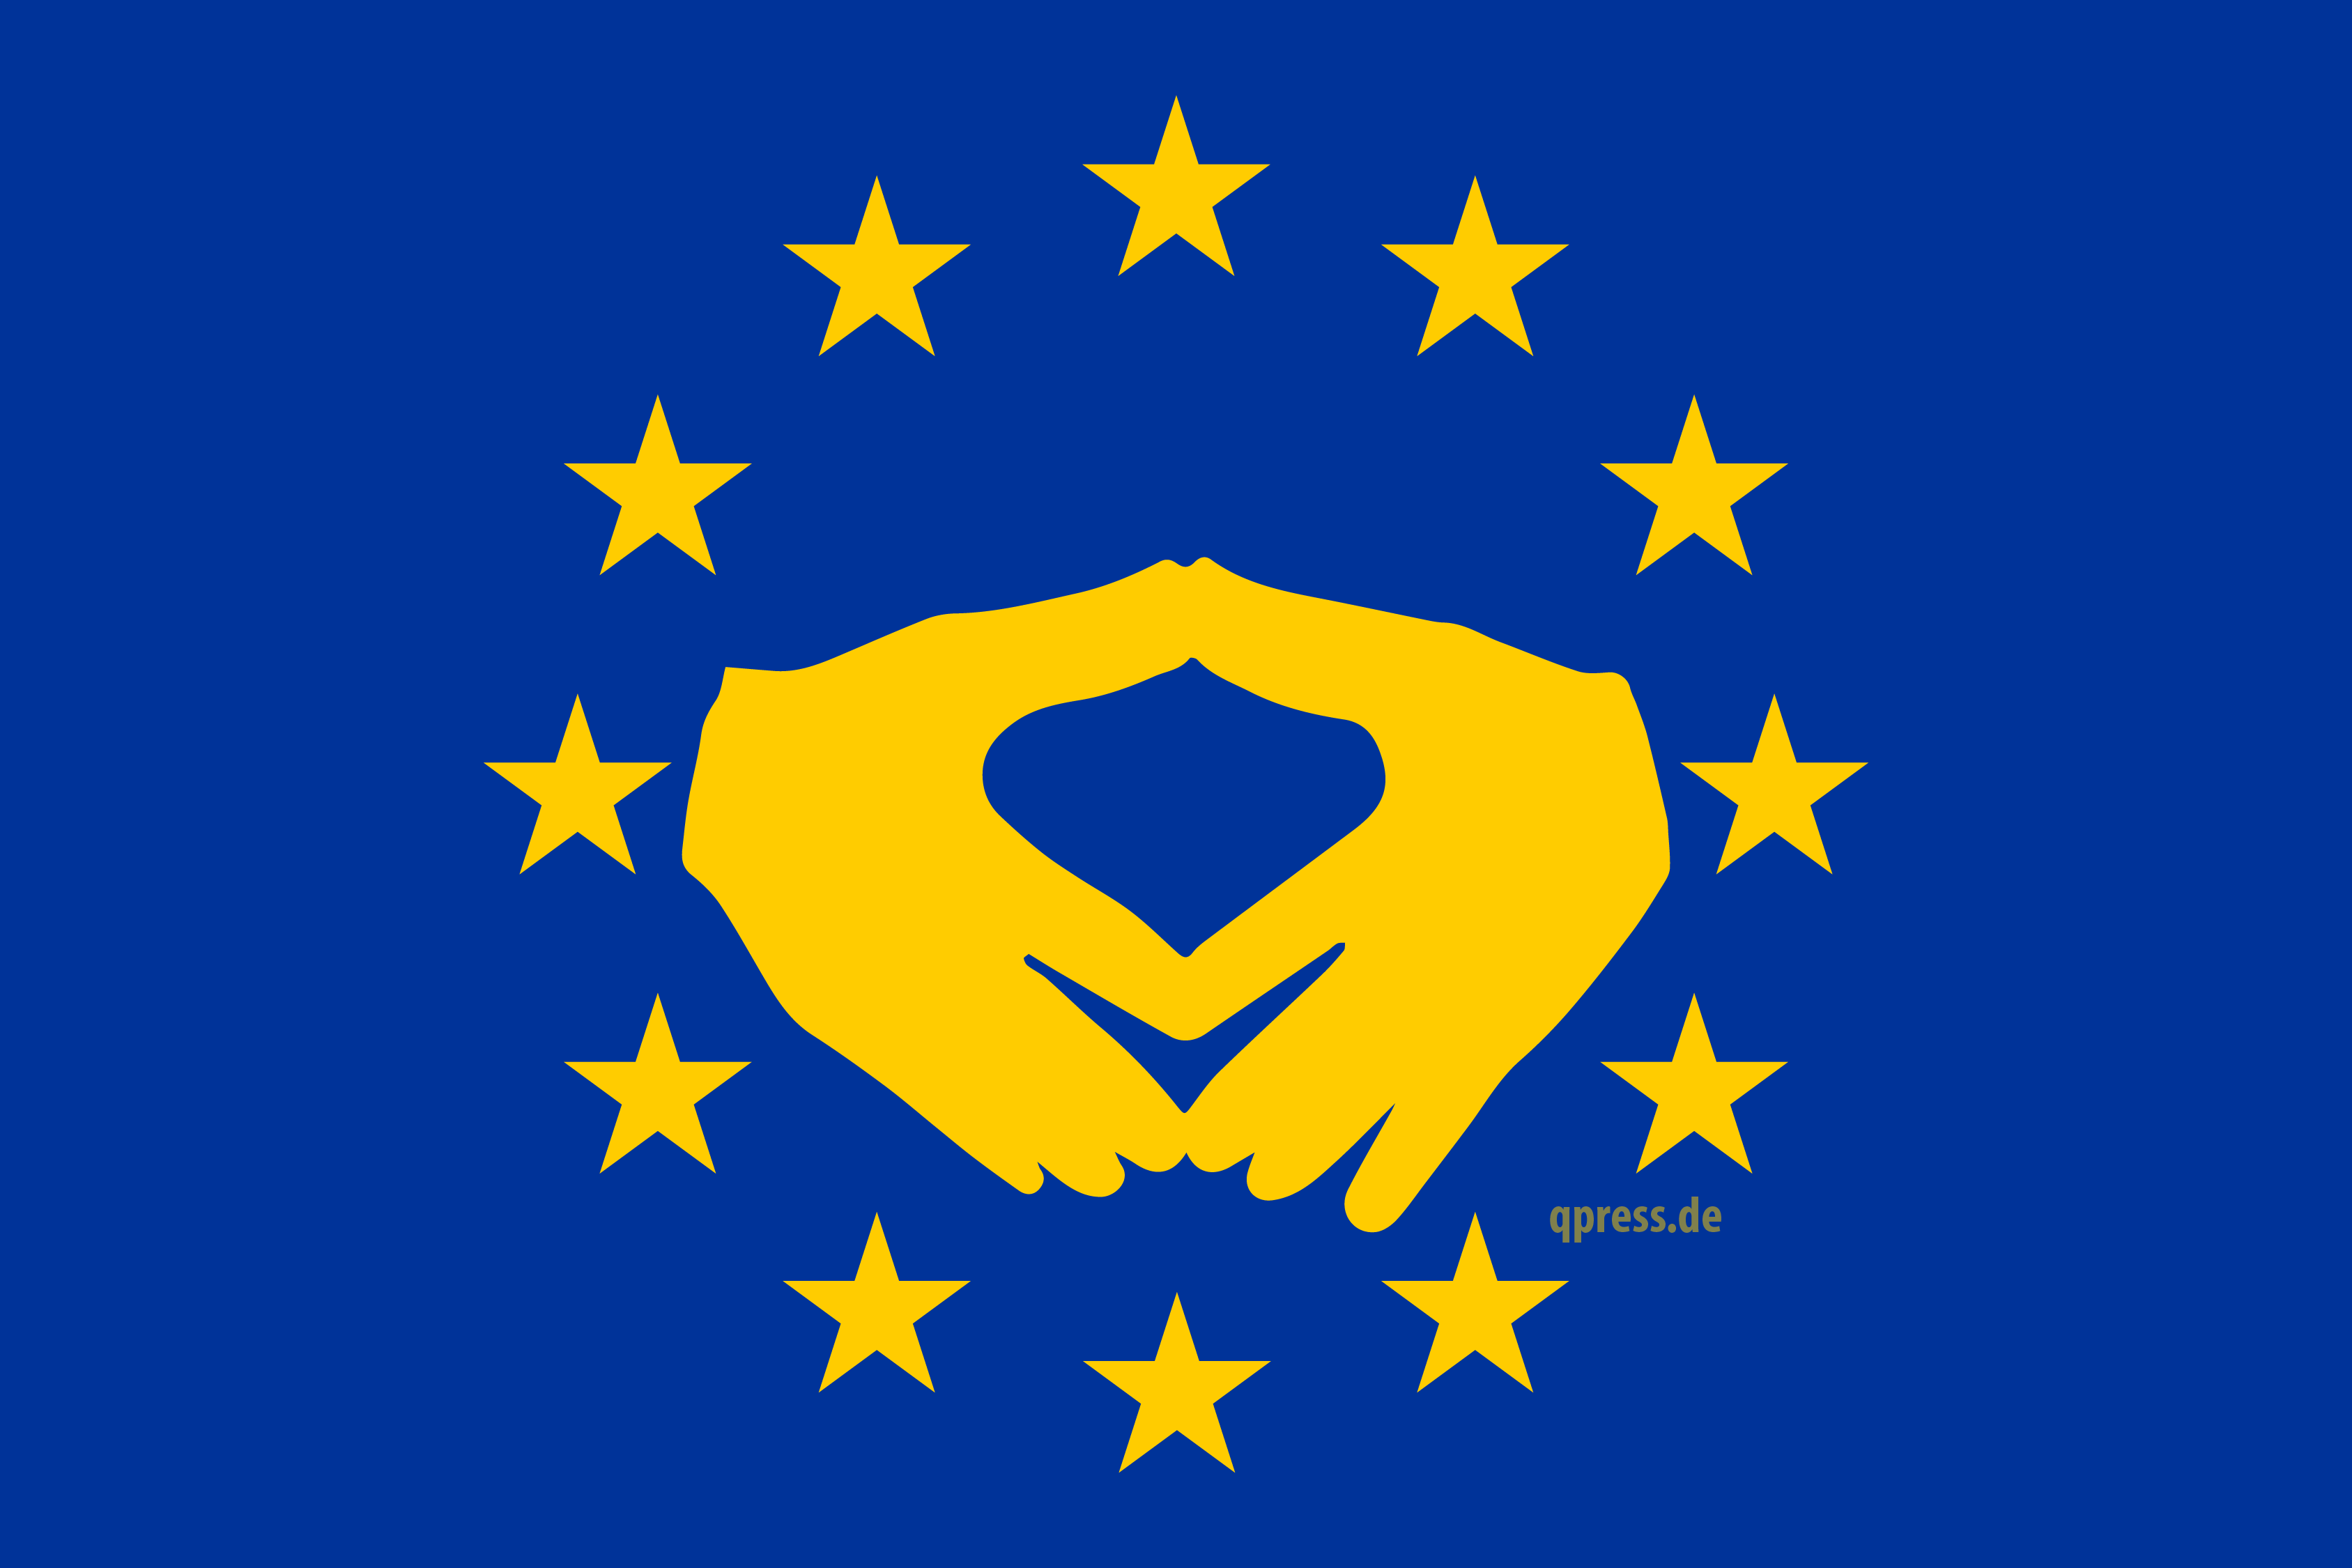 Flag-of-Europe-EU-Flagge-Merkel-Raute-Markenzeichnen-Merkelismus